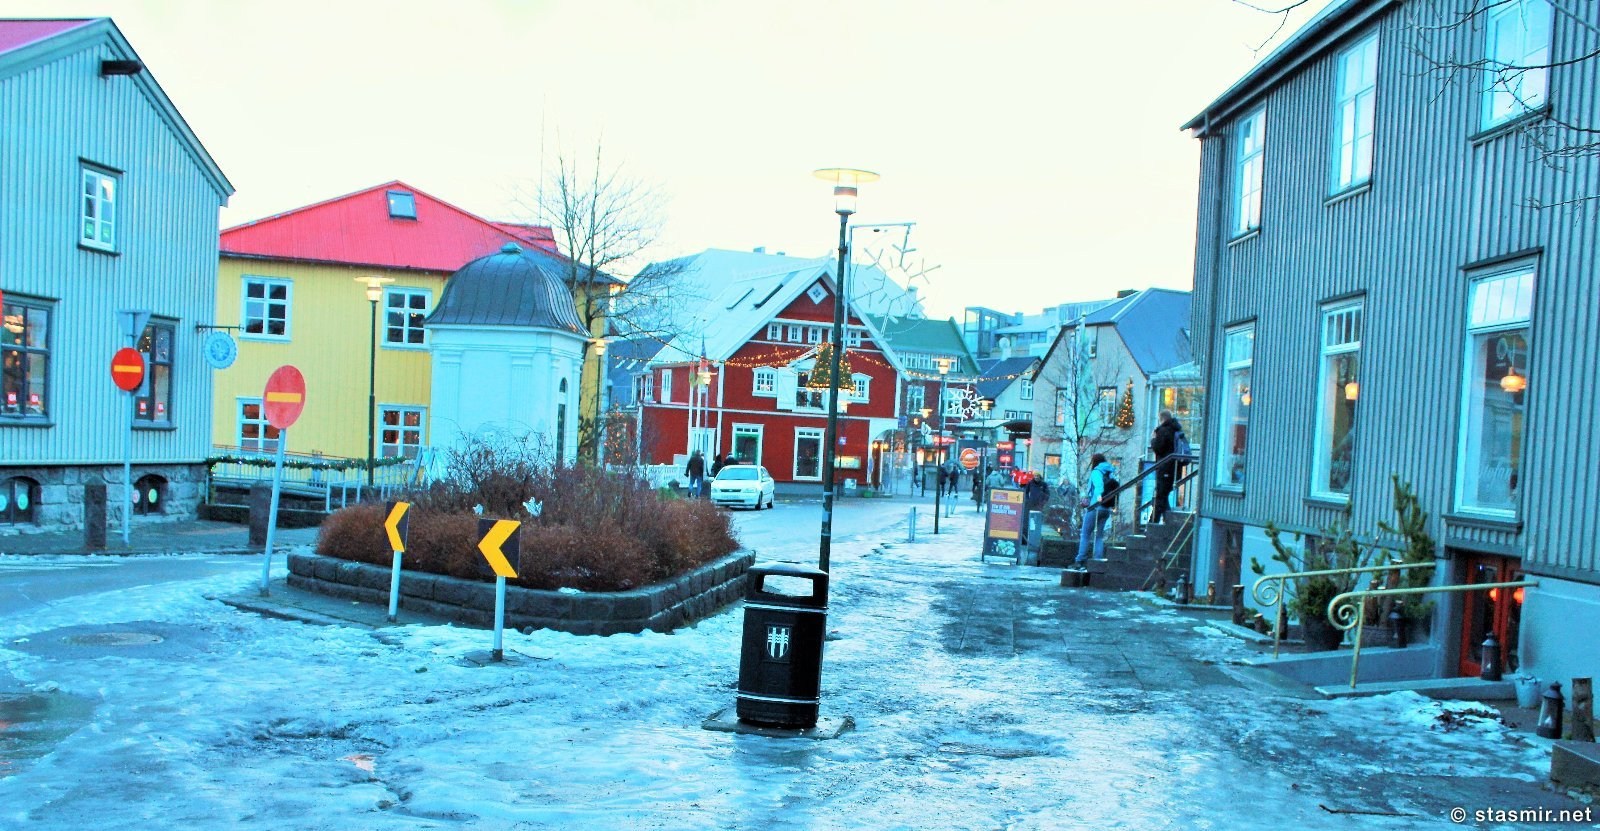 Зимний Рейкьявик под Новый Год - дикий гололед, фото Стасмир, Photo Stasmir